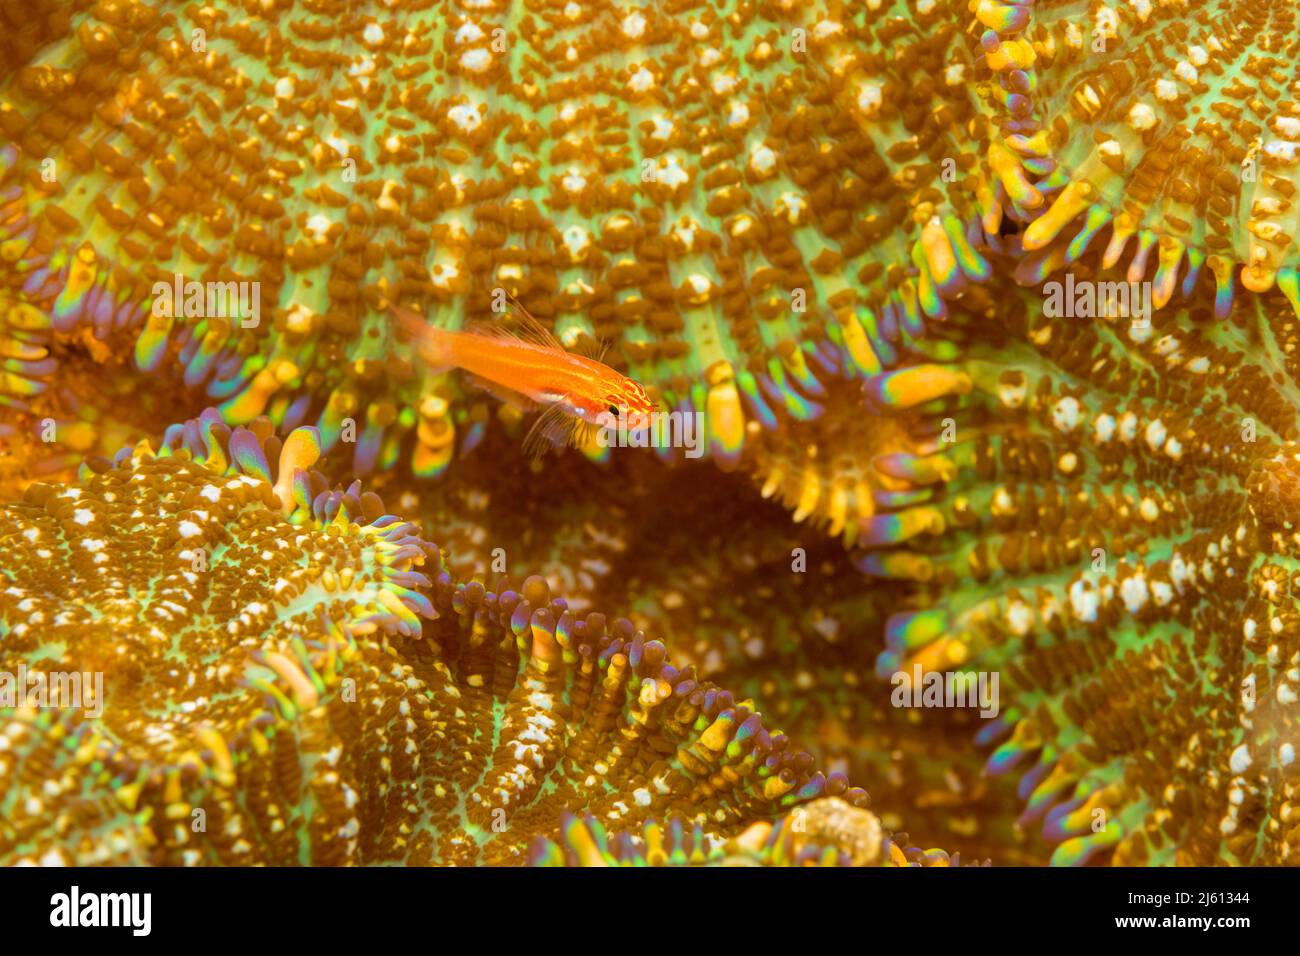 Una triplefina rayada juvenil, Helcogramma striata, que se extiende sobre una colonia de corallimorfos, también conocidos como corales de setas, Discosoma o Actinodiscus Foto de stock